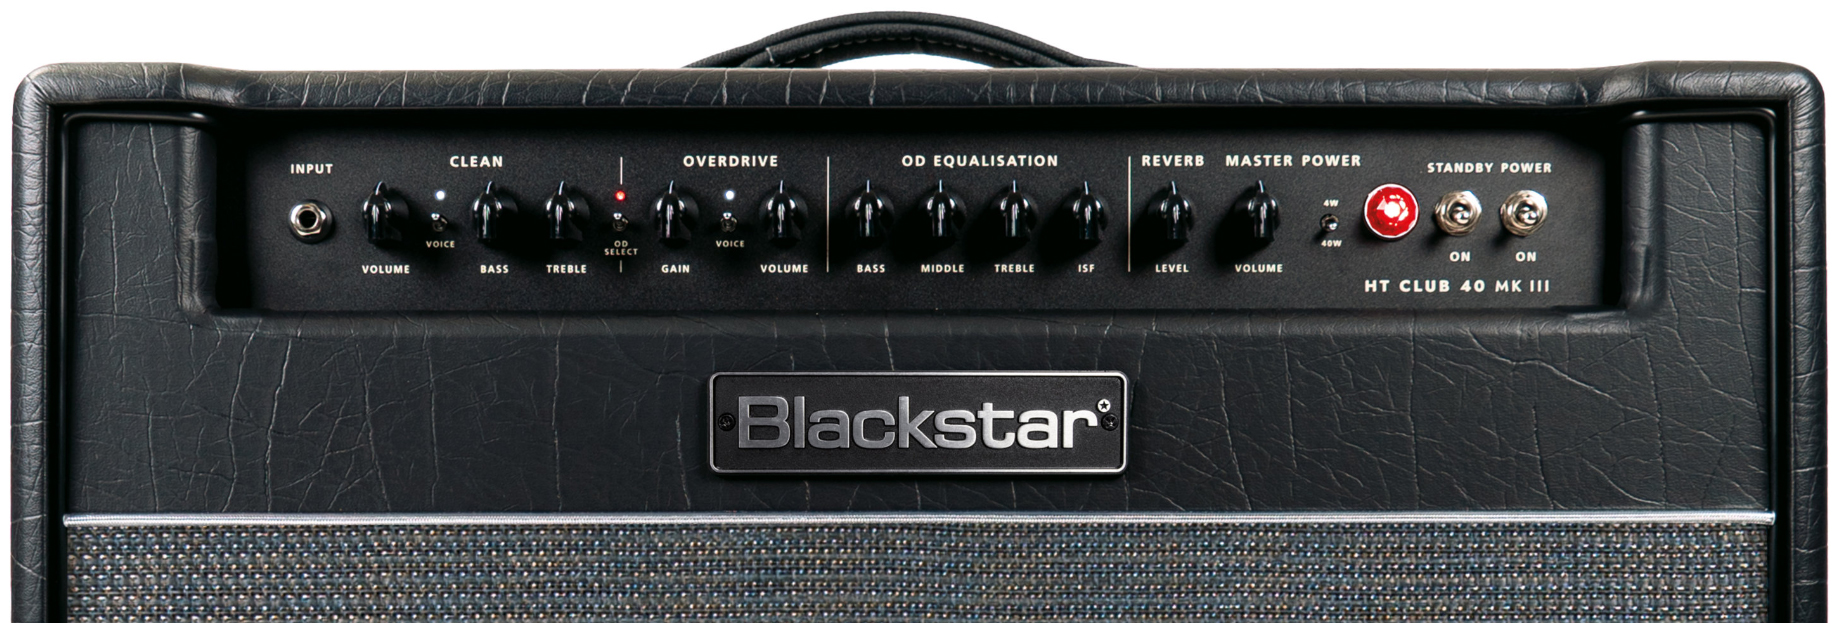 Blackstar Ht Venue Club 40 112 Mkiii 40w 1x12 El34 - Combo voor elektrische gitaar - Variation 3